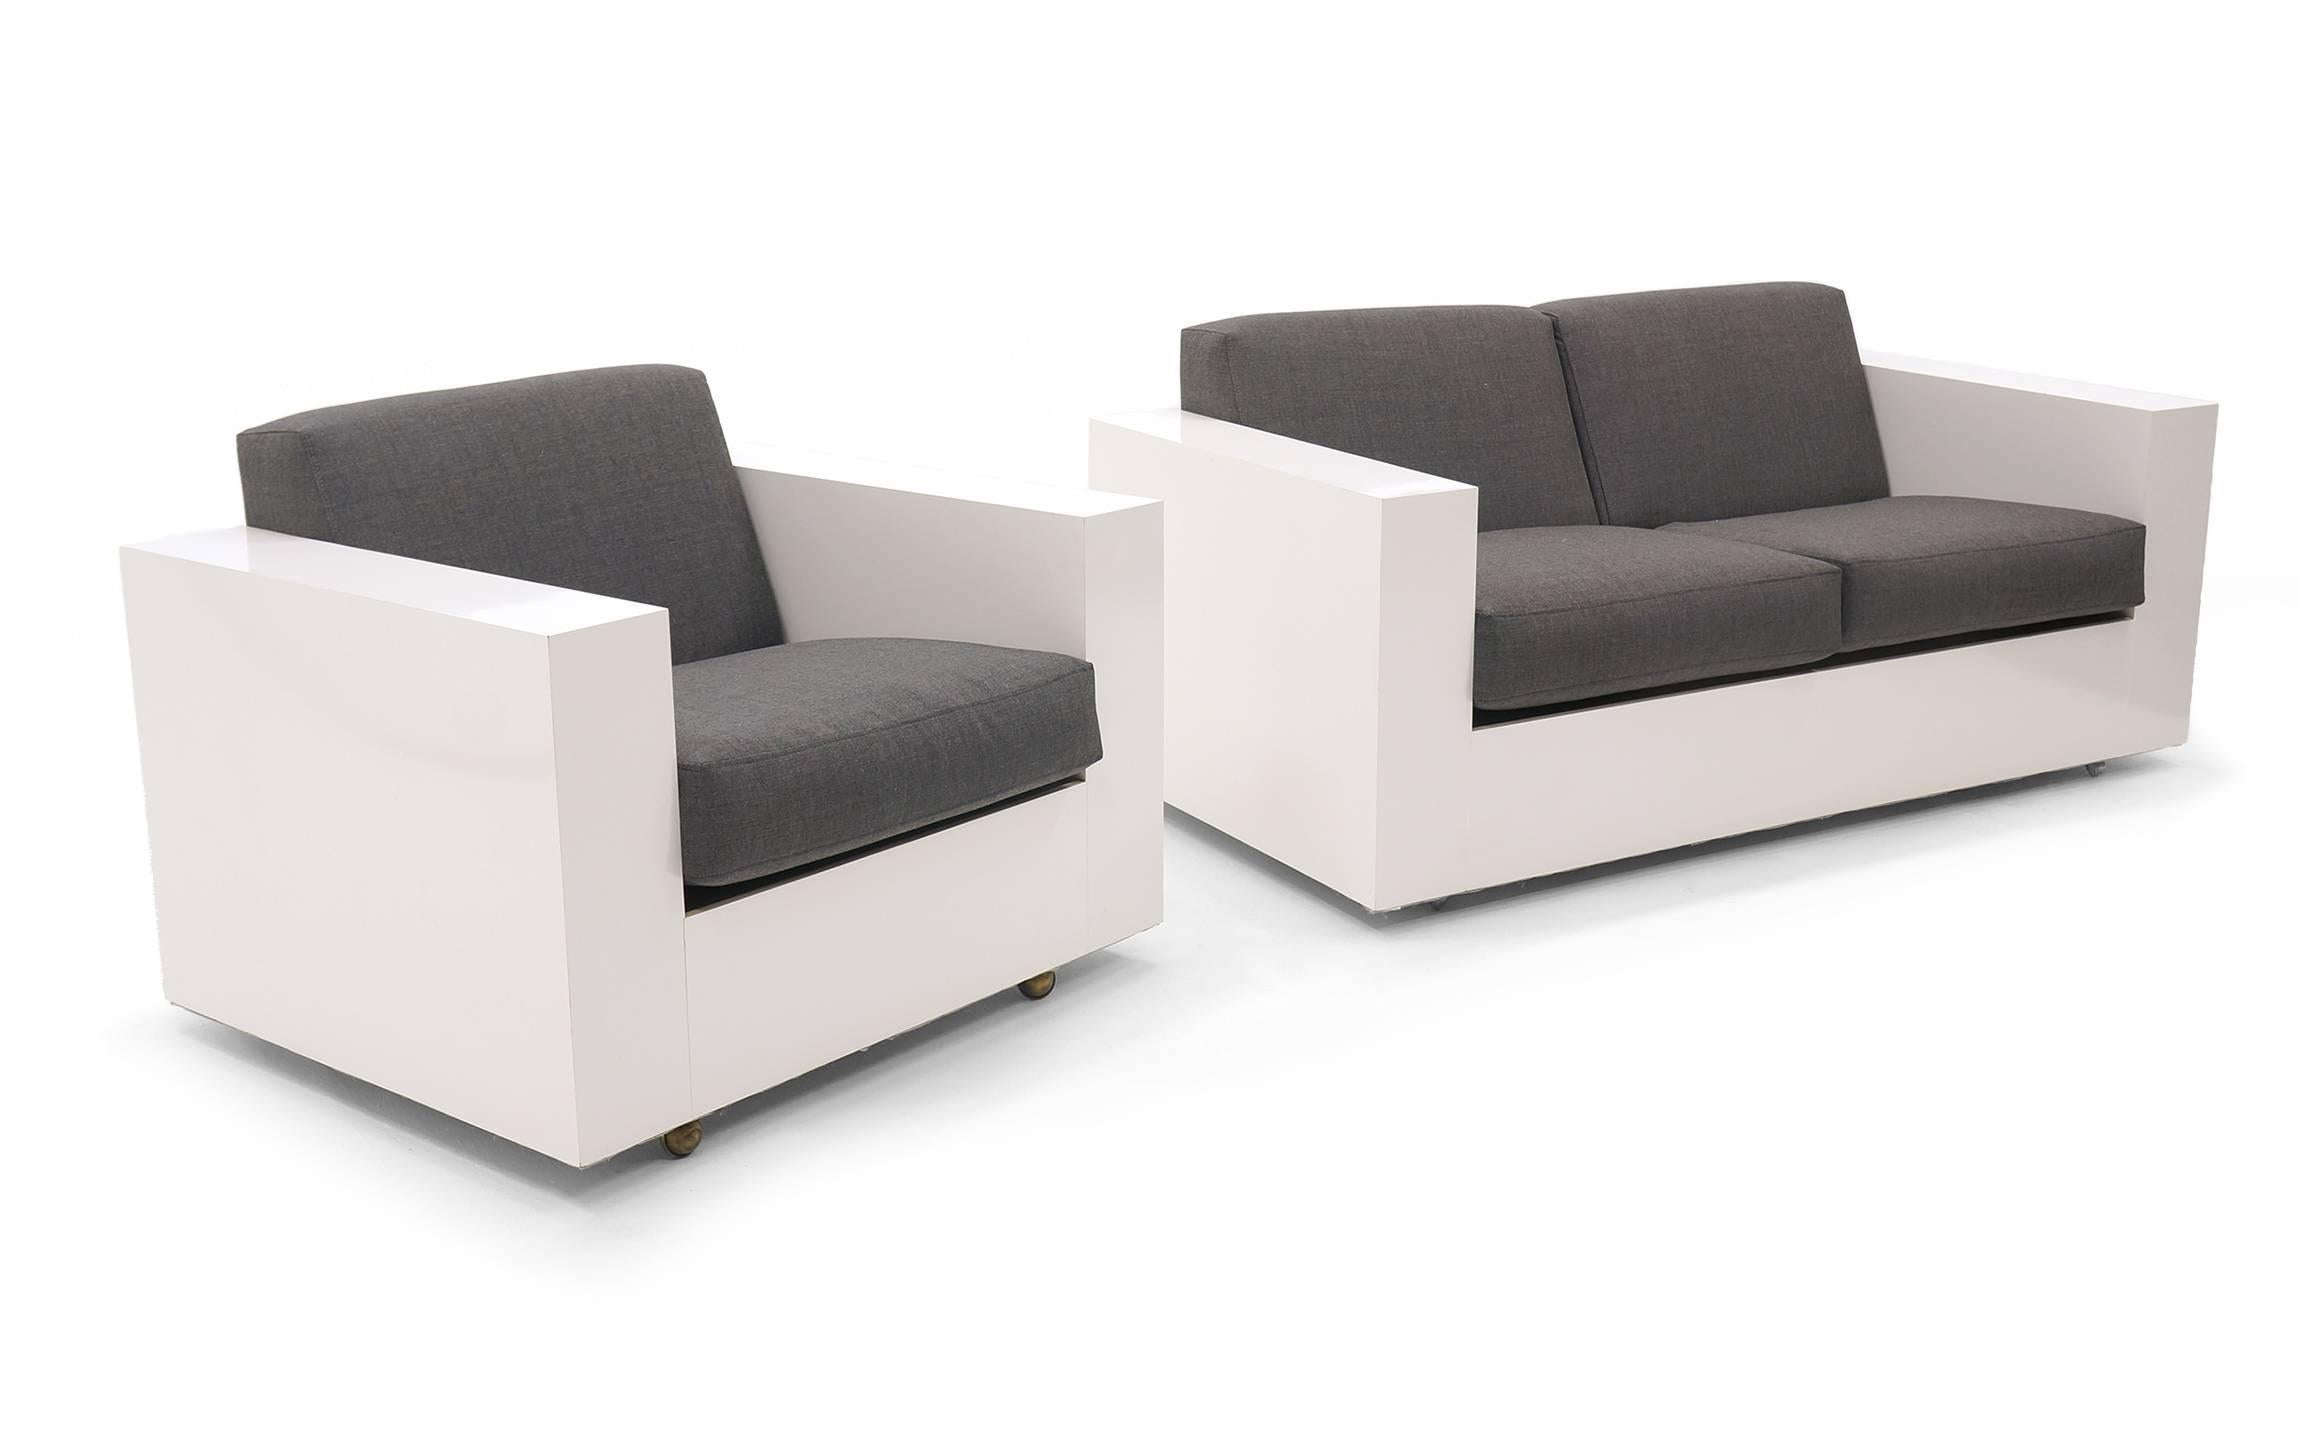 Sofa und Sessel, entworfen von Milo Baughman für Thayer Coggin. Mod 1970er Design. Gehäuse/Rahmen aus weißem Laminat mit neuem anthrazitfarbenem Maharam-Stoff. Vollständig und fachmännisch restauriert und neu gepolstert.  Beide behalten die